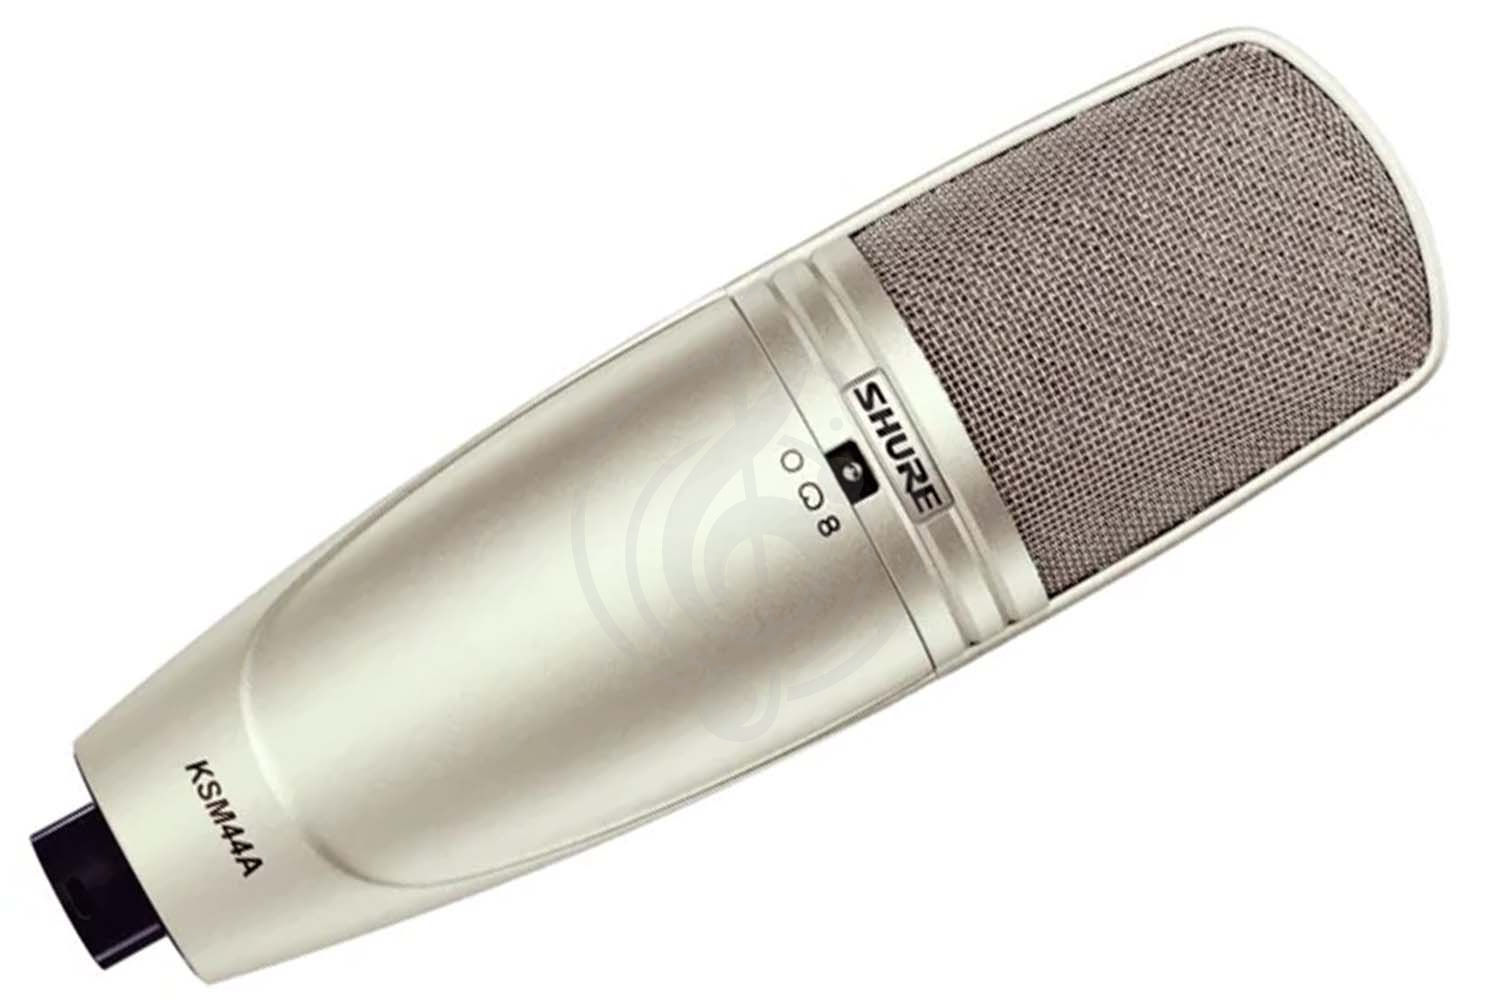 Конденсаторный студийный микрофон Конденсаторные студийные микрофоны Shure SHURE KSM44A/SL - конденсаторный студийный микрофон KSM44A/SL - фото 1